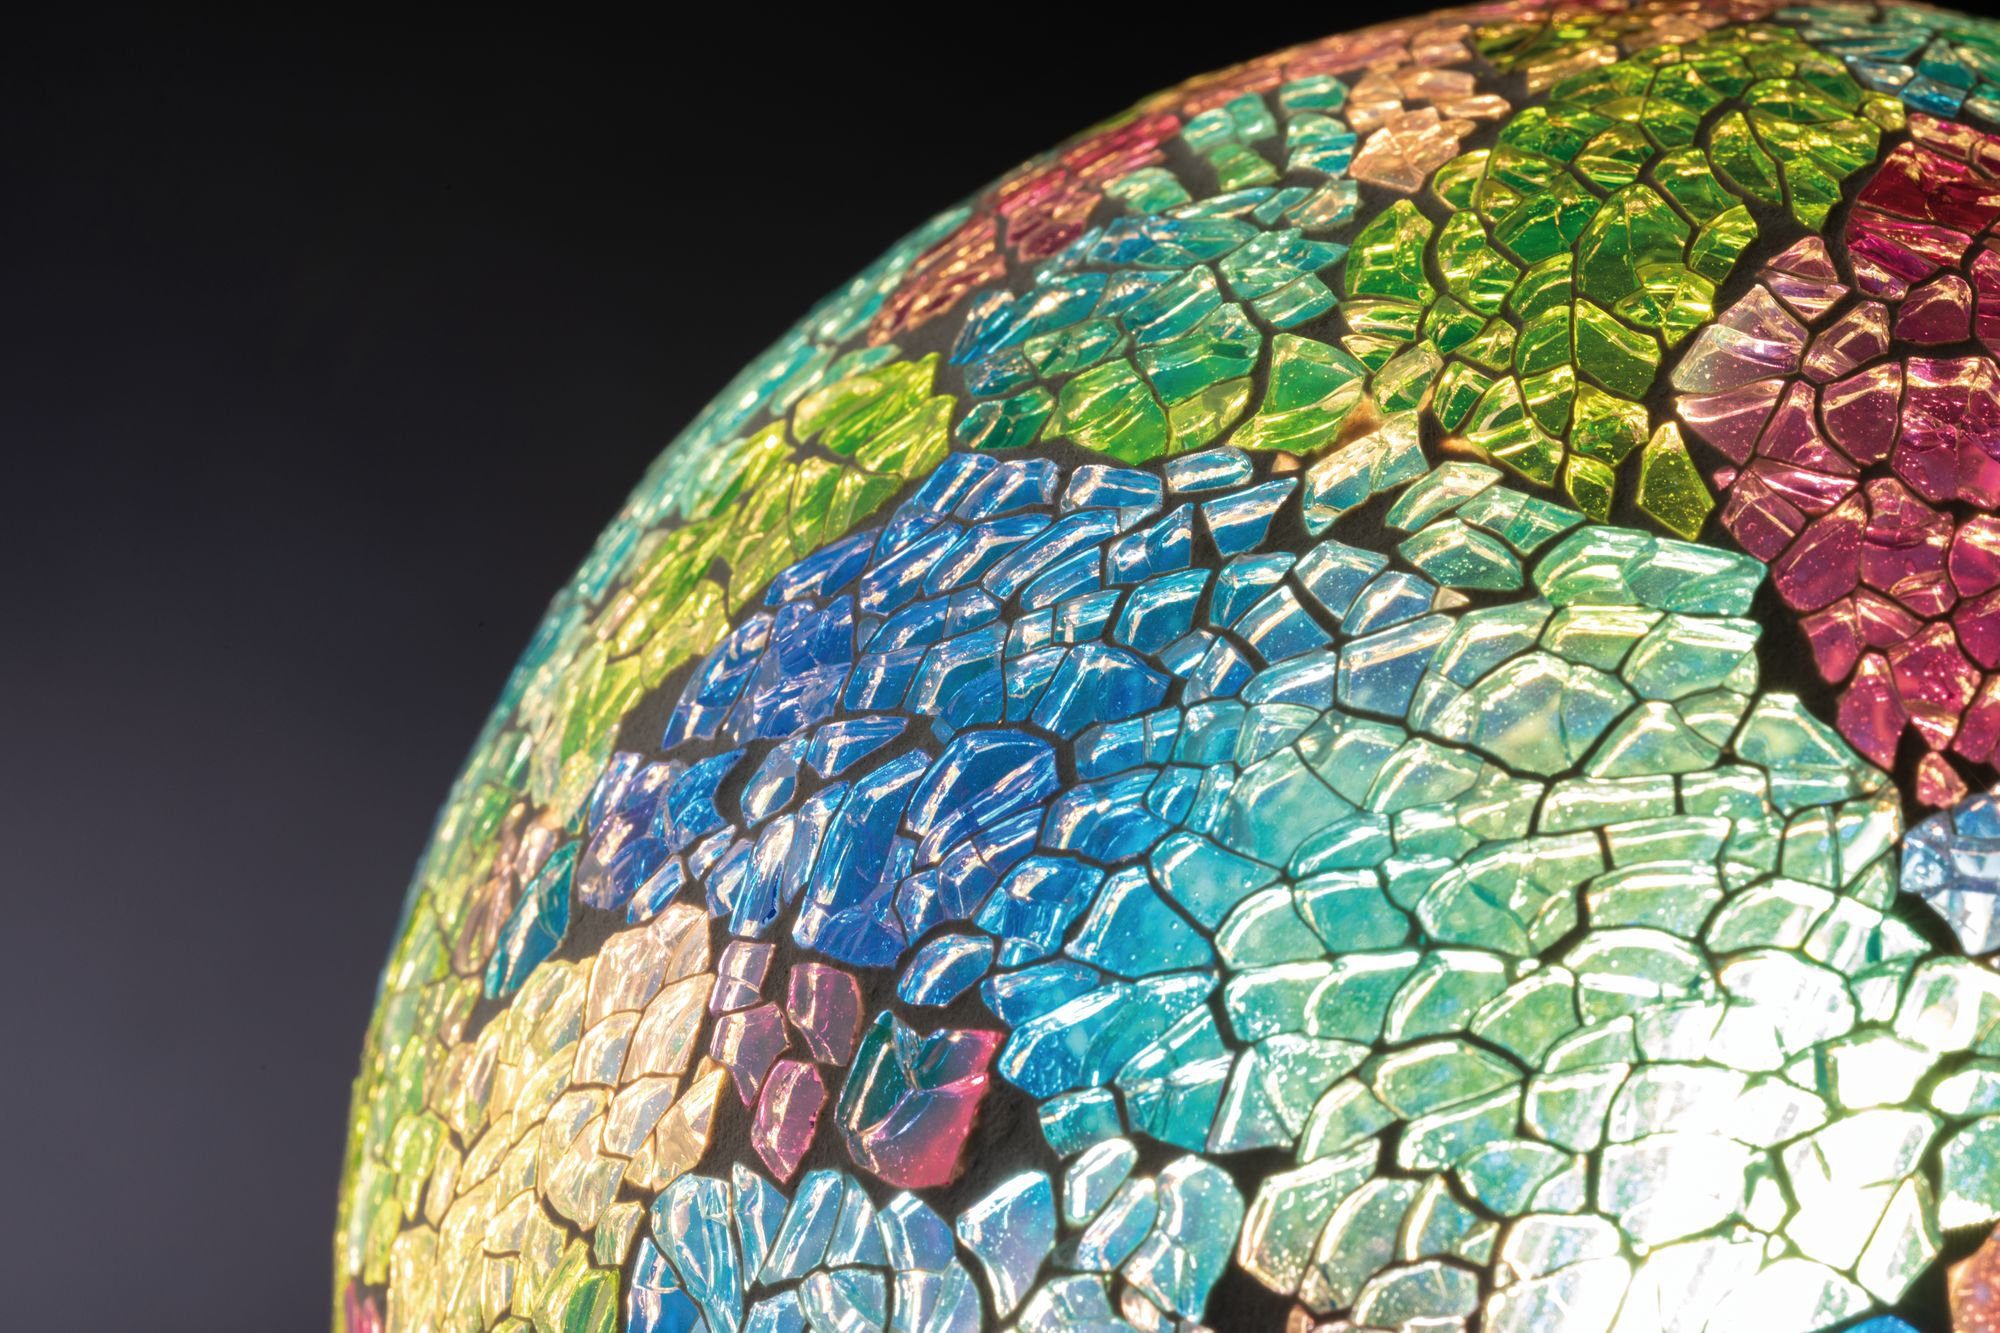 St., E27, E27 dimmbar, bunt Mosaic 2700K LED-Leuchtmittel Miracle Warmweiß 1 Paulmann